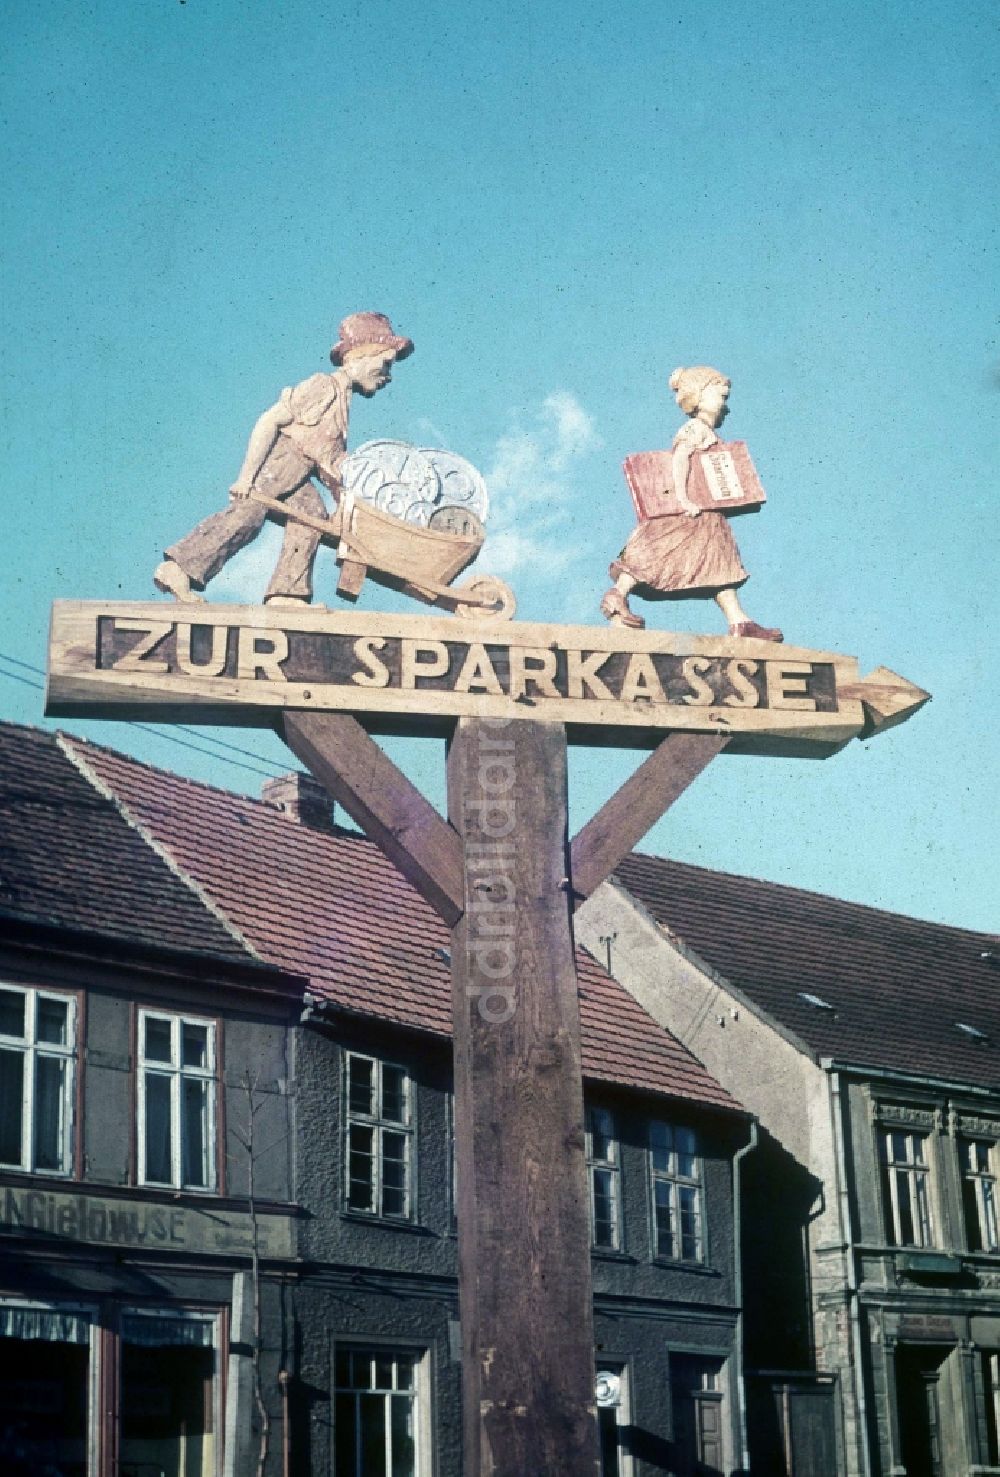 Neustrelitz: Geschnitzter Wegweiser aus Holz in Neustrelitz in Mecklenburg-Vorpommern in der DDR